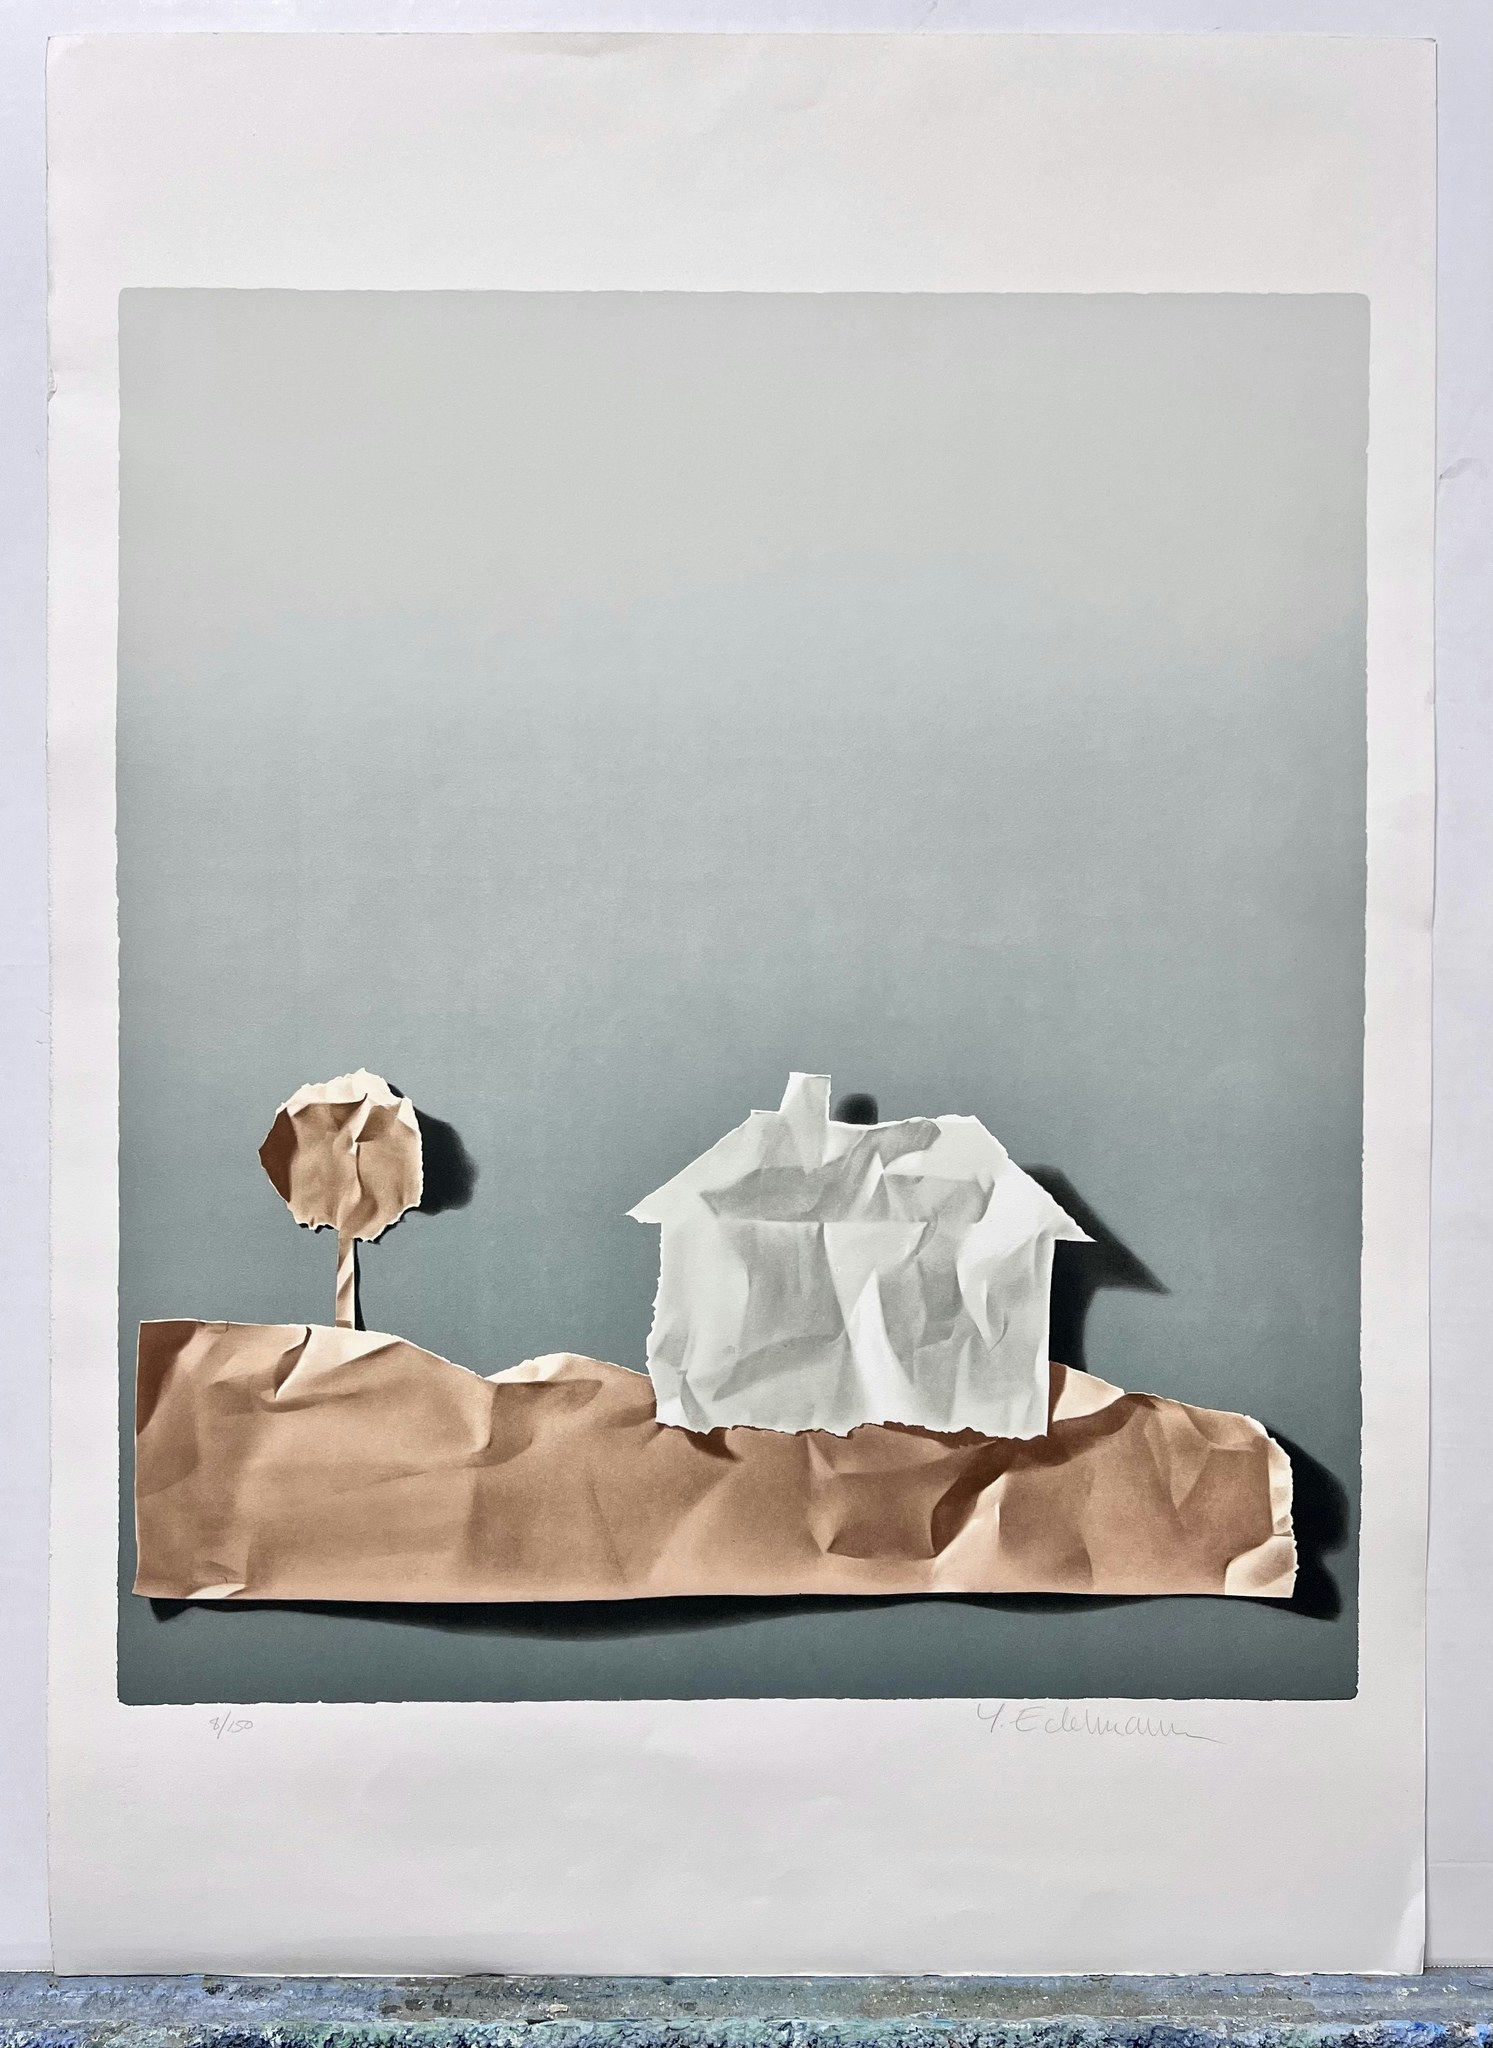 Yrjö Edelman, färglitografi, signerad och numrerad 8/250  "Landscape in paper", bladstorlek 61 x 86 cm.